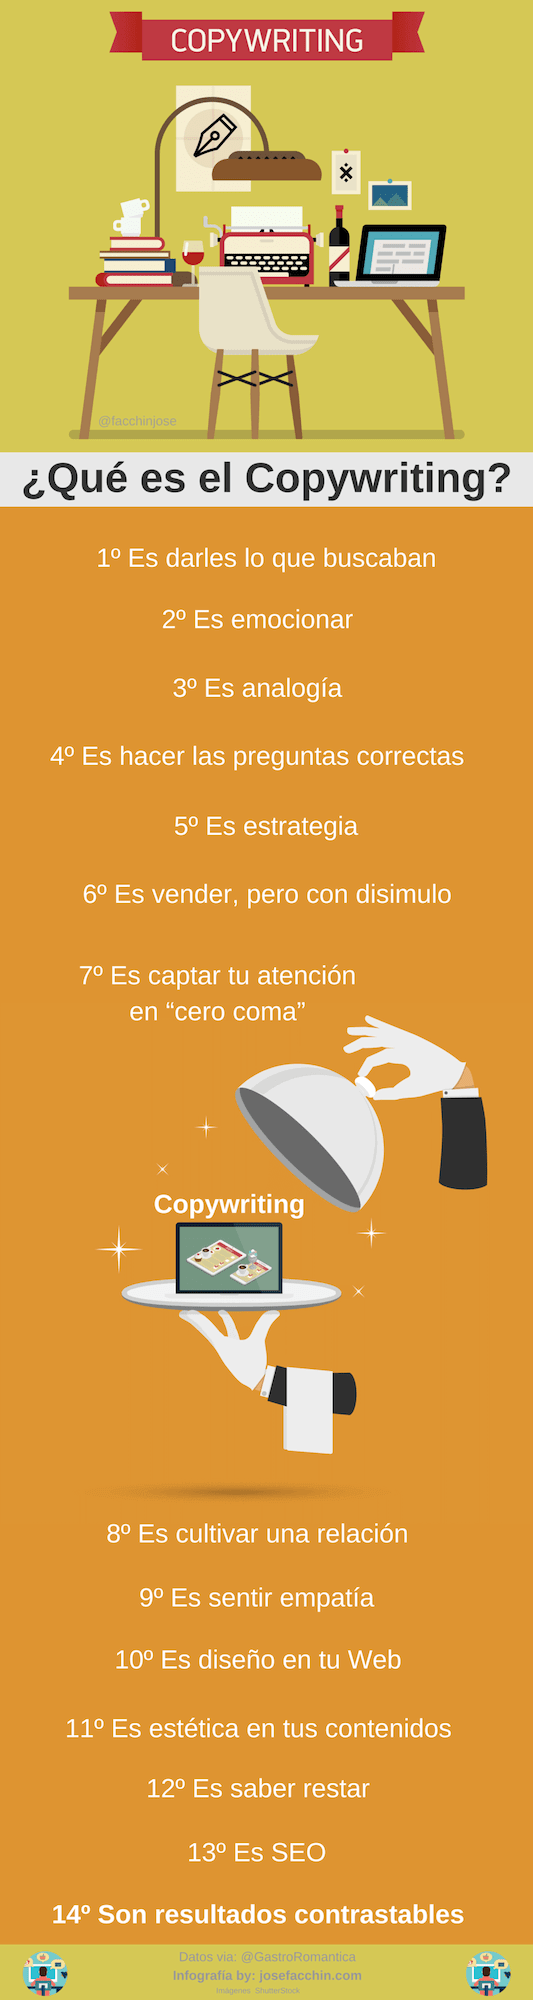 ¿Qué es el Copywriting? #Infografía #Copywriting